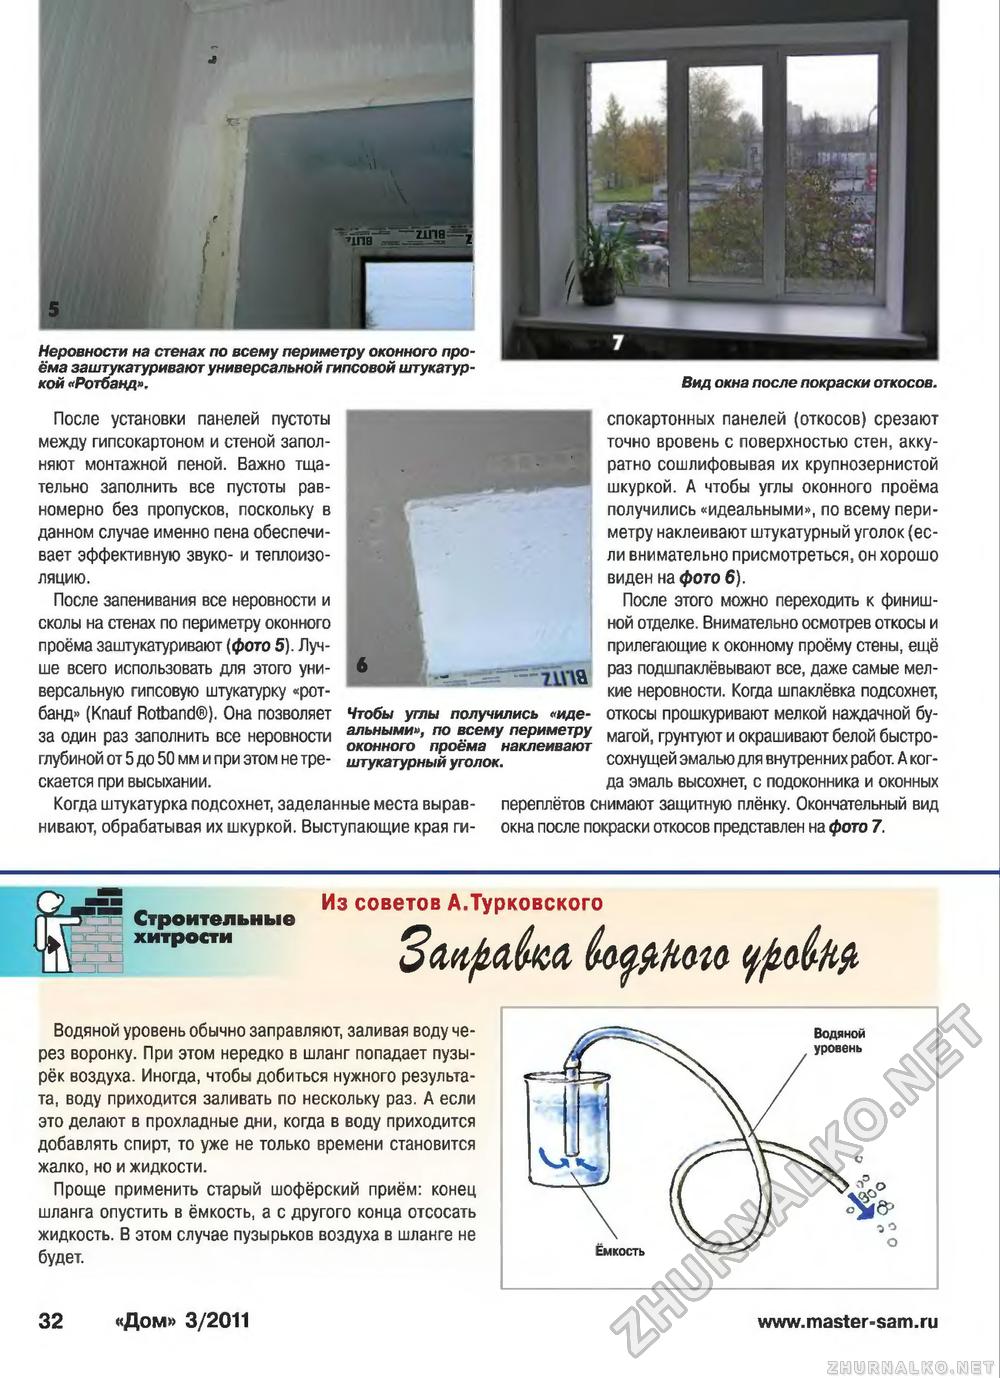 Дом 2011-03, страница 32